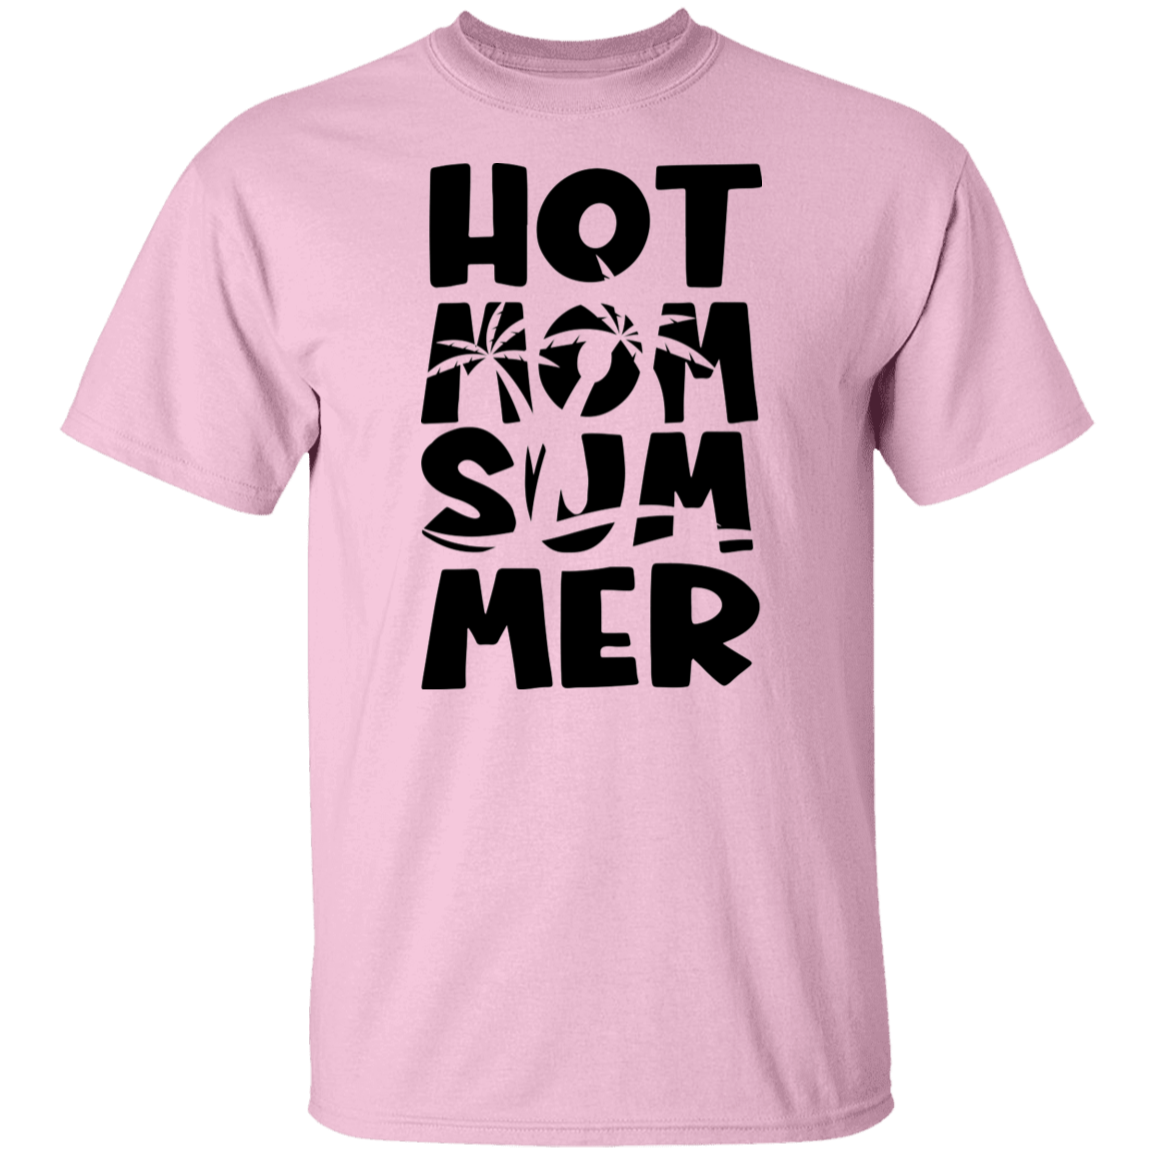 Hot Mom Summer 2 T-Shirt